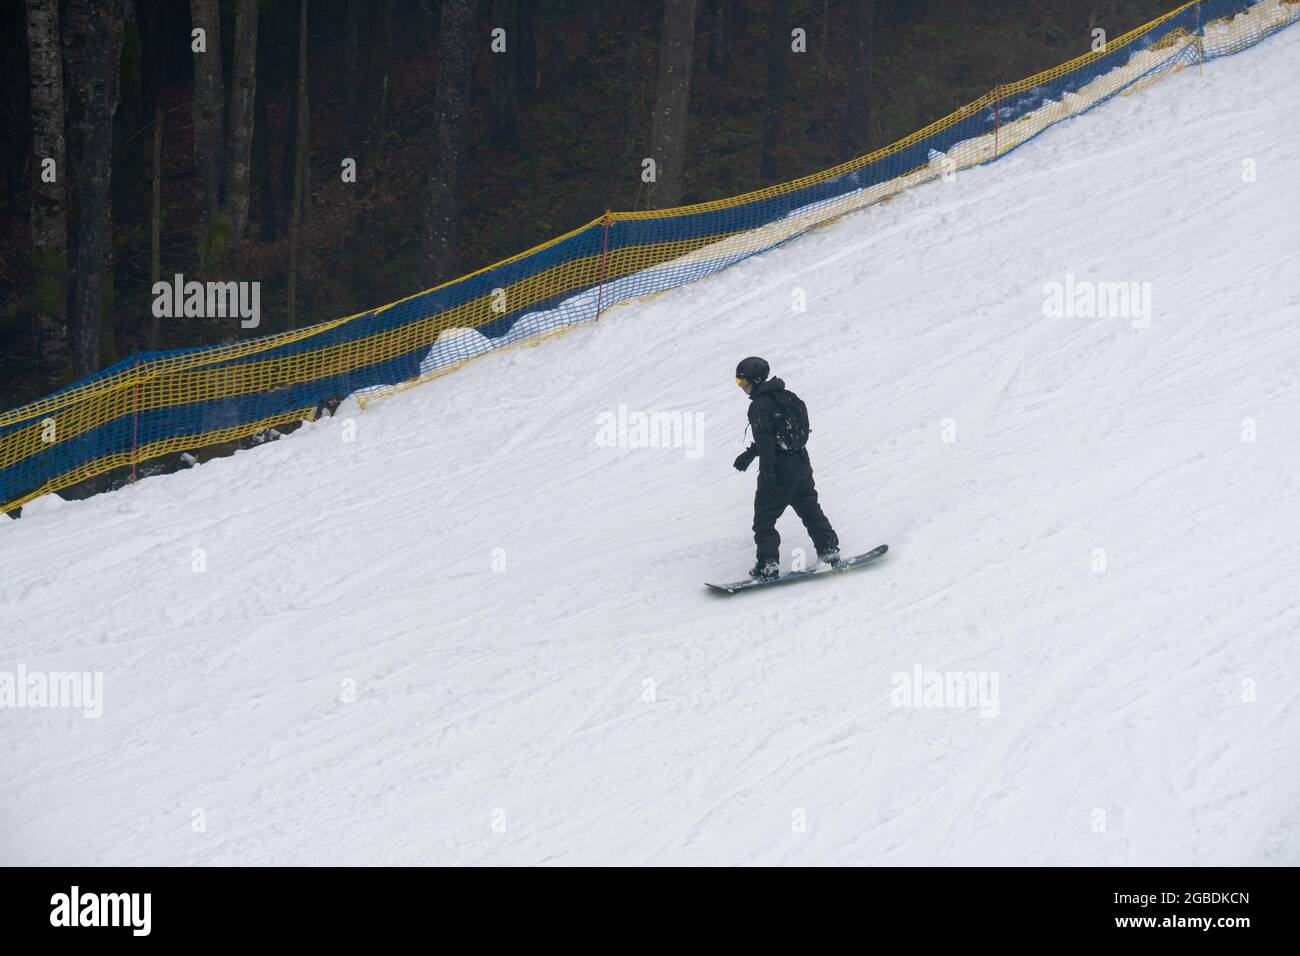 Vue de dessus du snowboardeur sur la pente couverte de neige blanche Banque D'Images